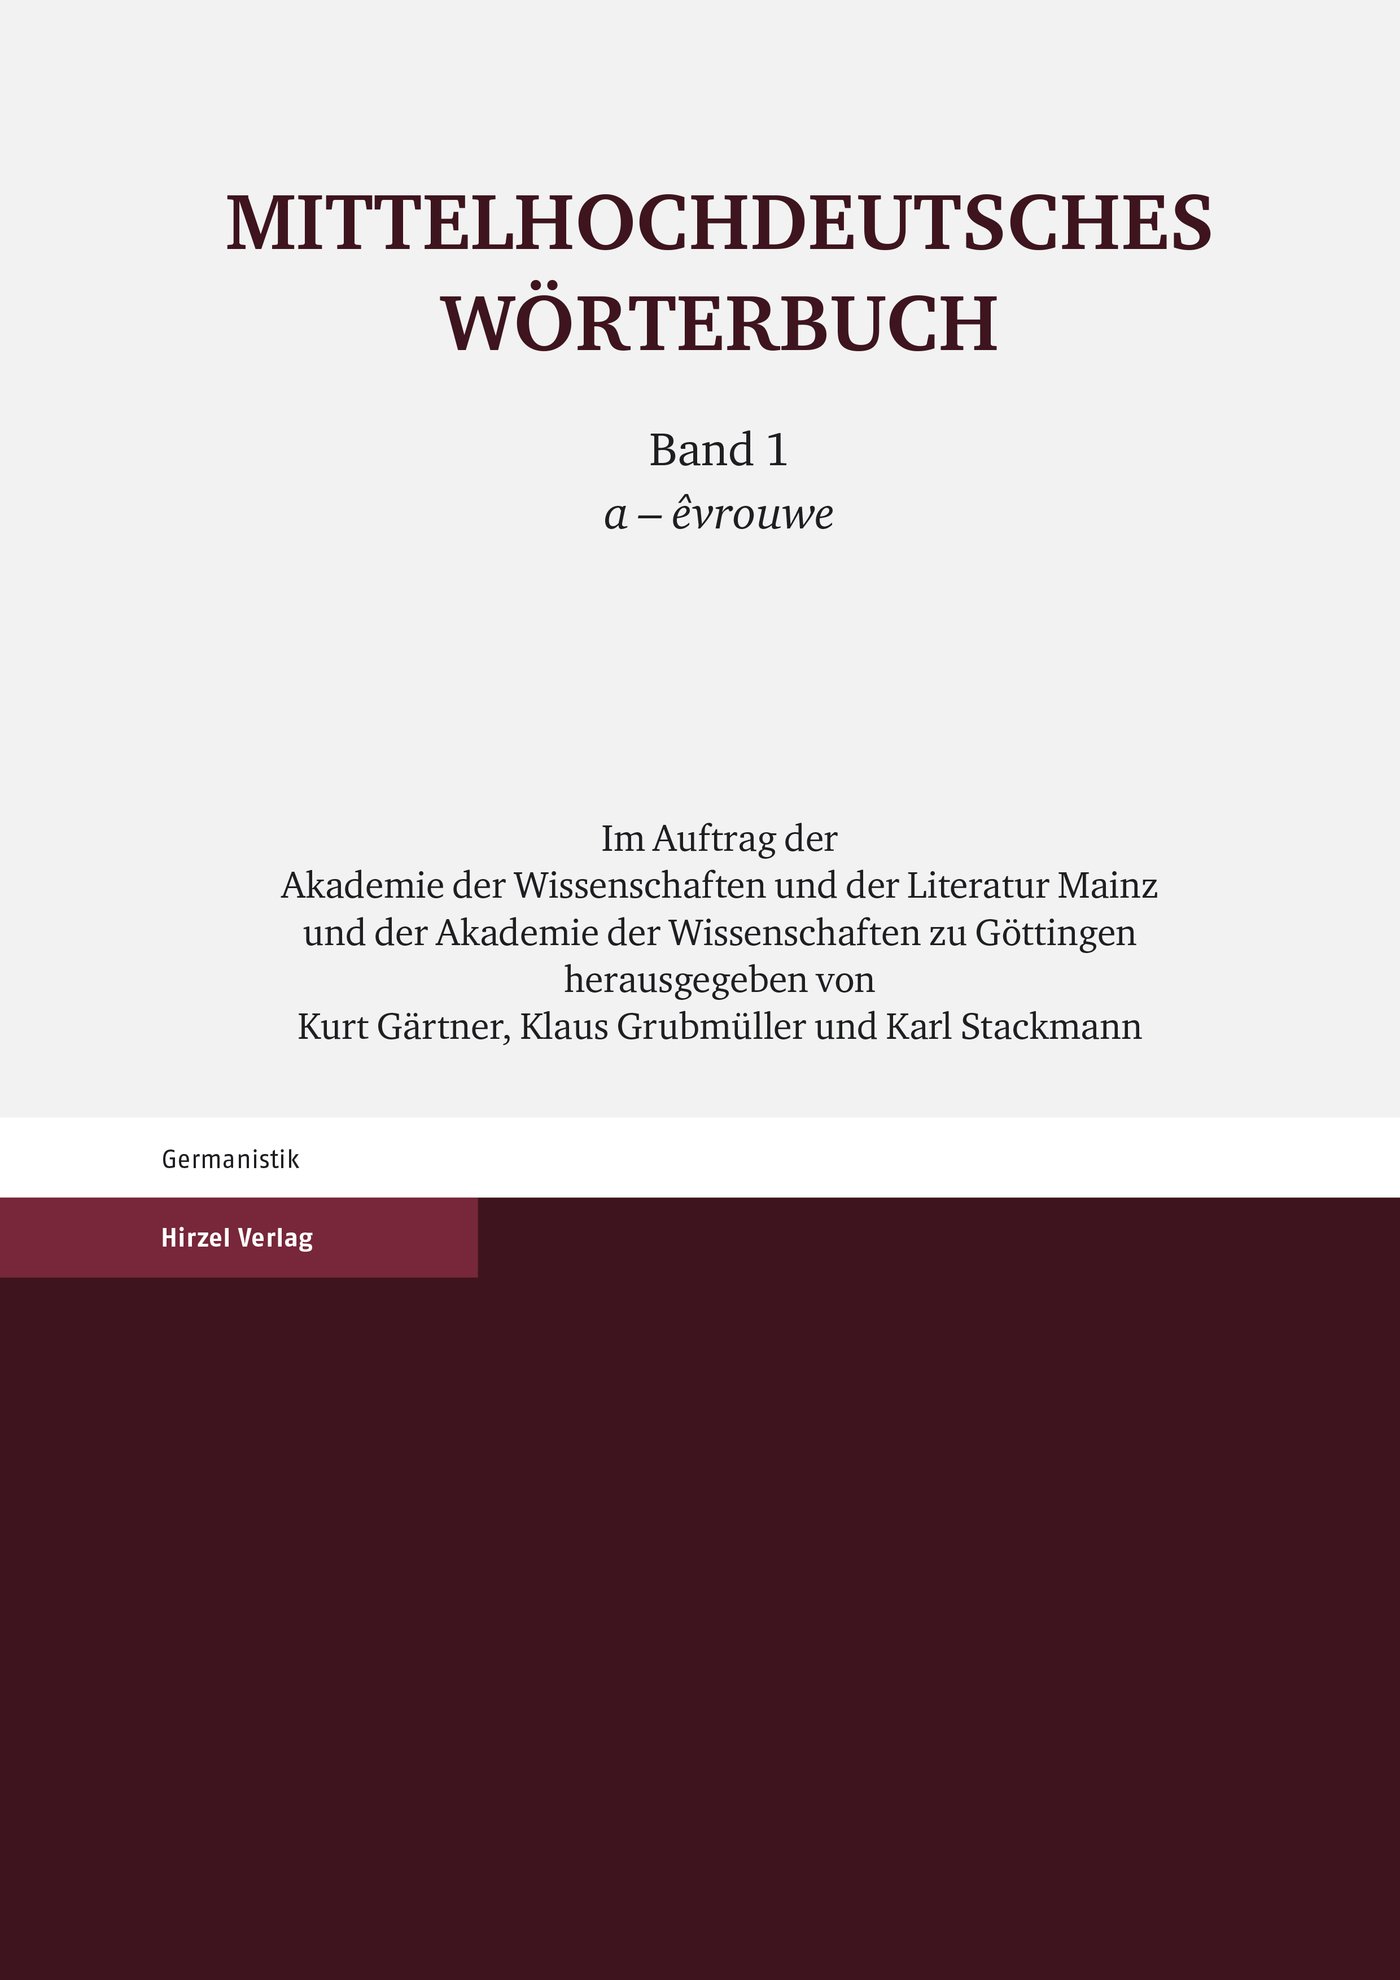 Mittelhochdeutsches Wörterbuch. Erster Band